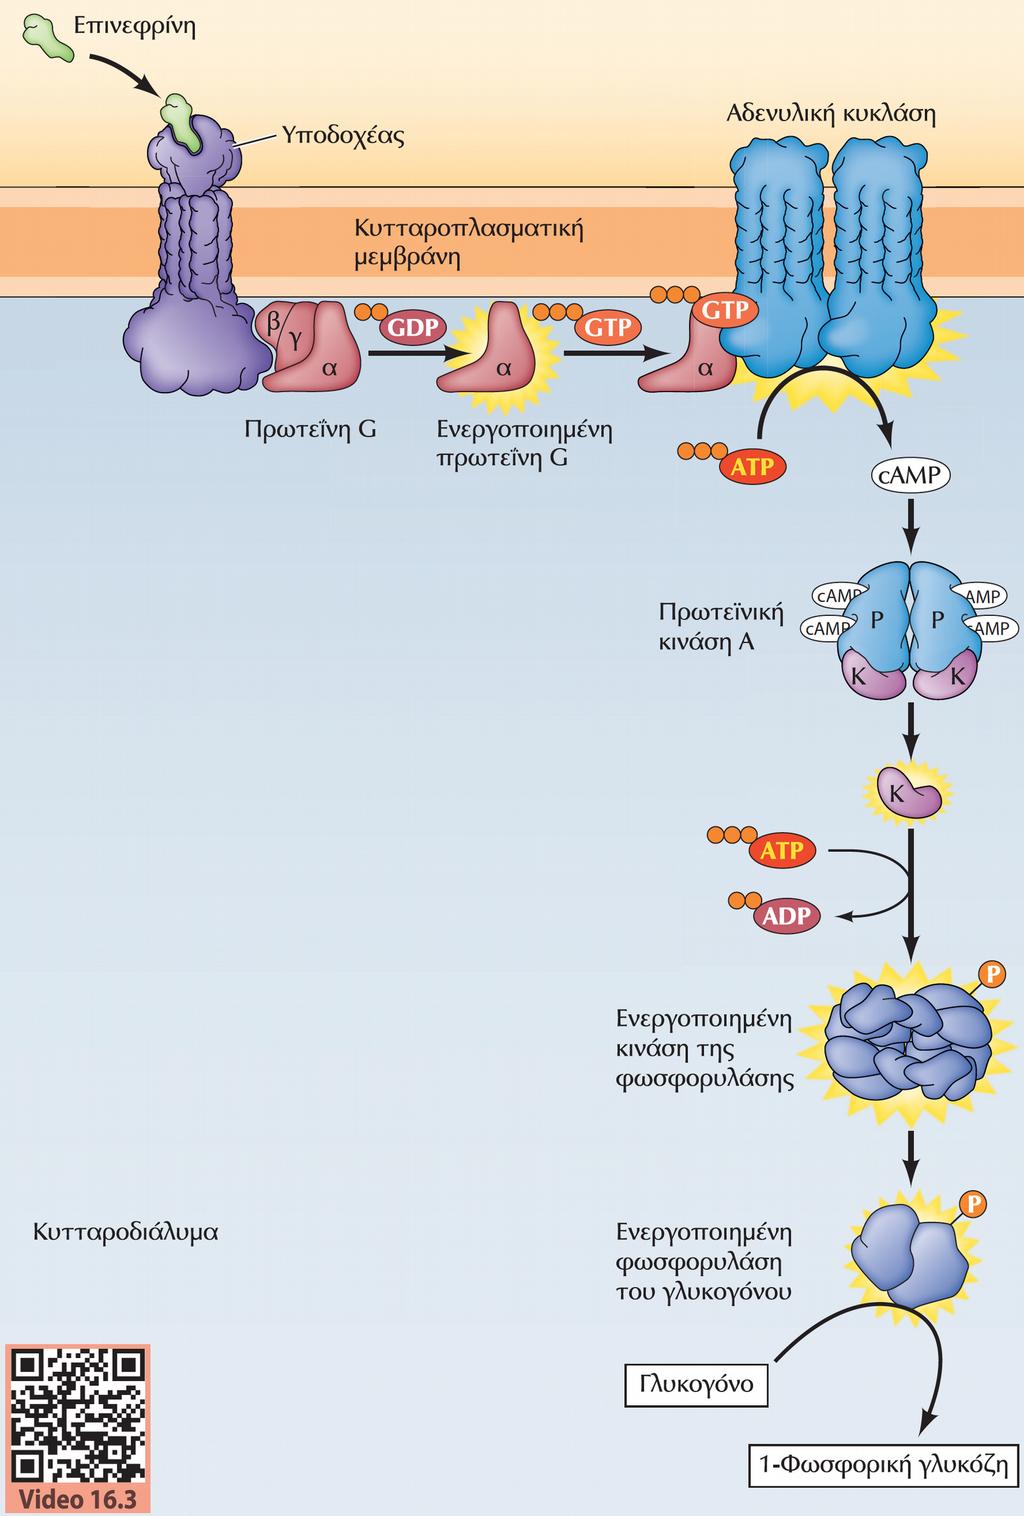 Ρύθμιση του μεταβολισμού του γλυκογόνου από την επινεφρίνη -Ταχεία δράση Η ενεργοποίηση του υποδοχέα από την επινεφρίνη διεγείρει μια πρωτεΐνη G η οποία ενεργοποιεί την αδενυλική κυκλάση.